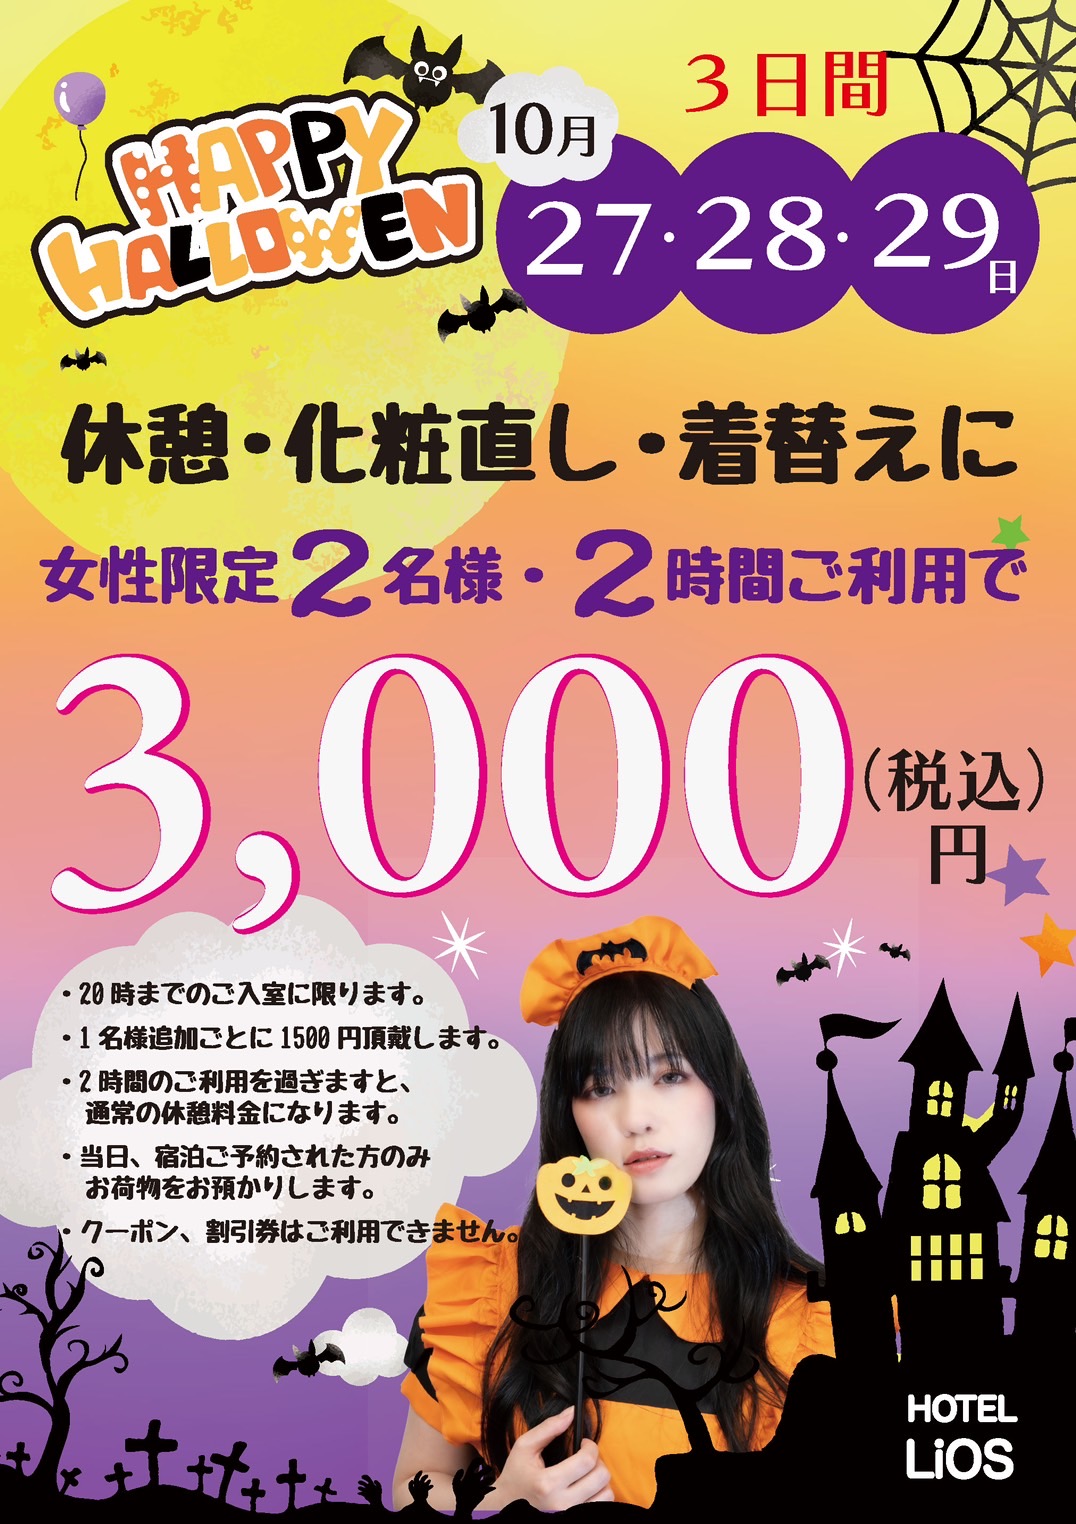 ハロウィン期間の１０月２７．２８．２９日の３日間に渋谷のハロウィン参加のためにお部屋を開放いたします。